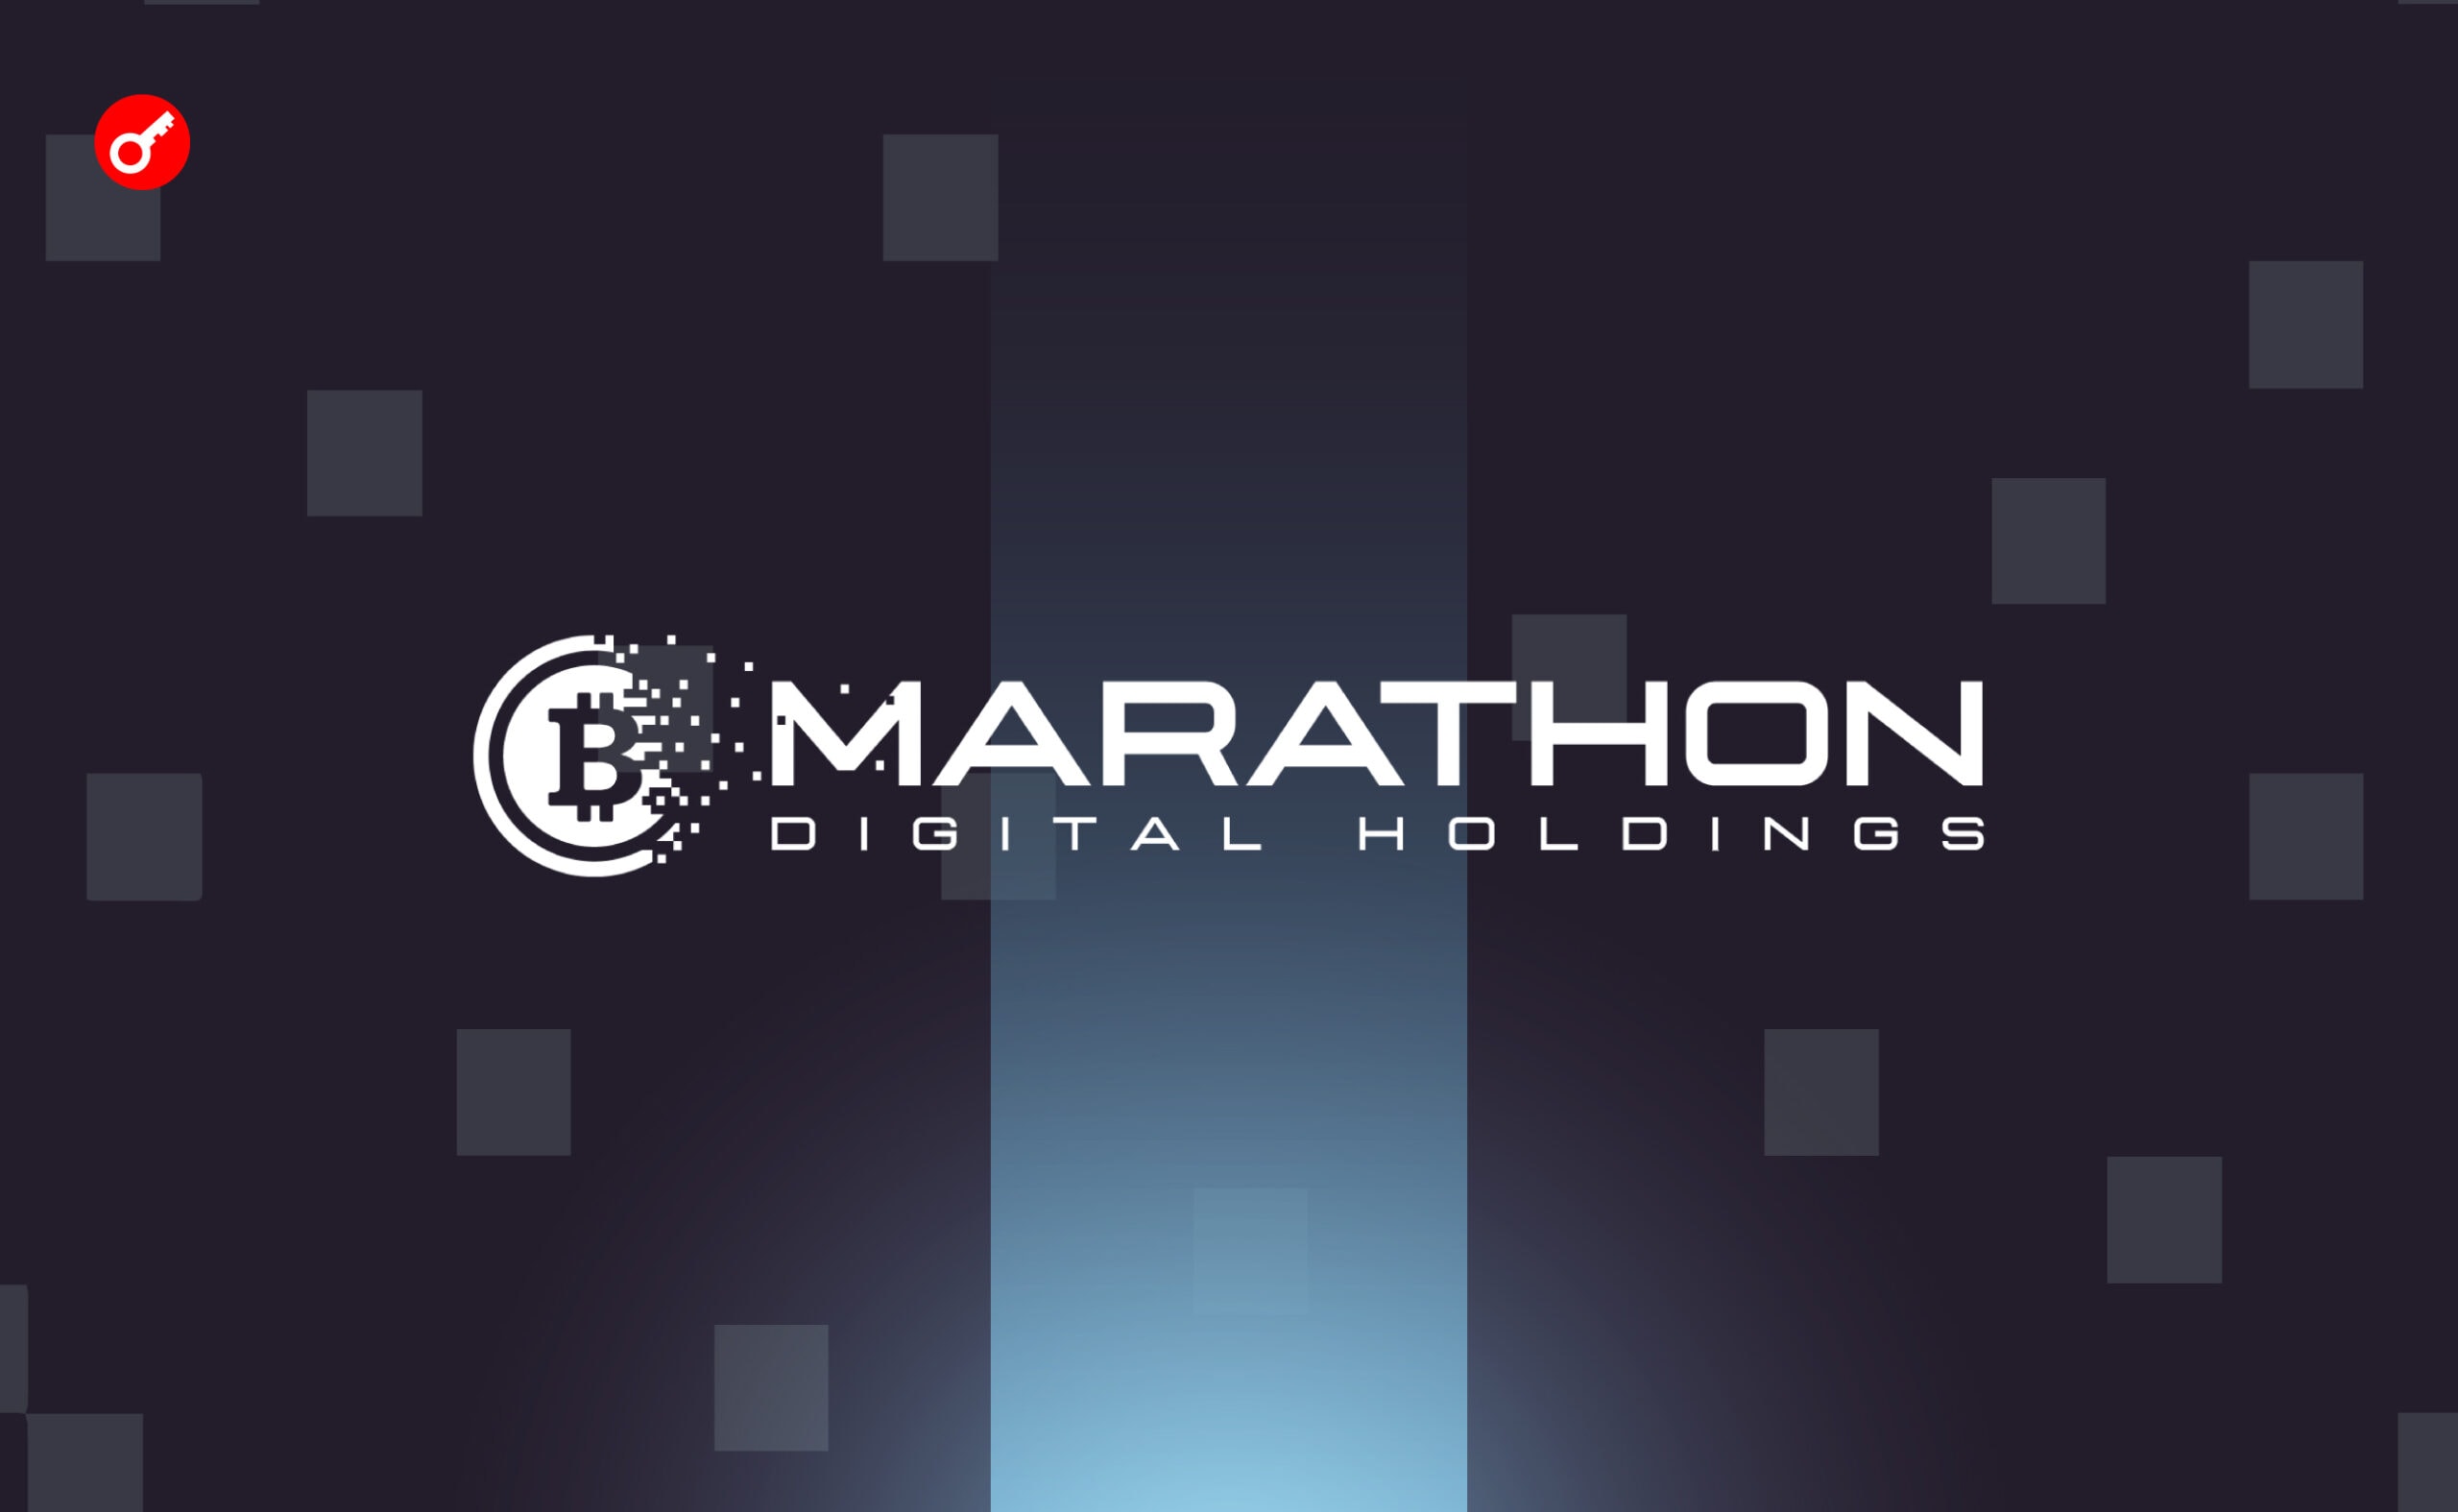 Marathon Digital достиг хешрейта в 28,7 EH/s и увеличил резервы до 16 930 BTC. Заглавный коллаж новости.